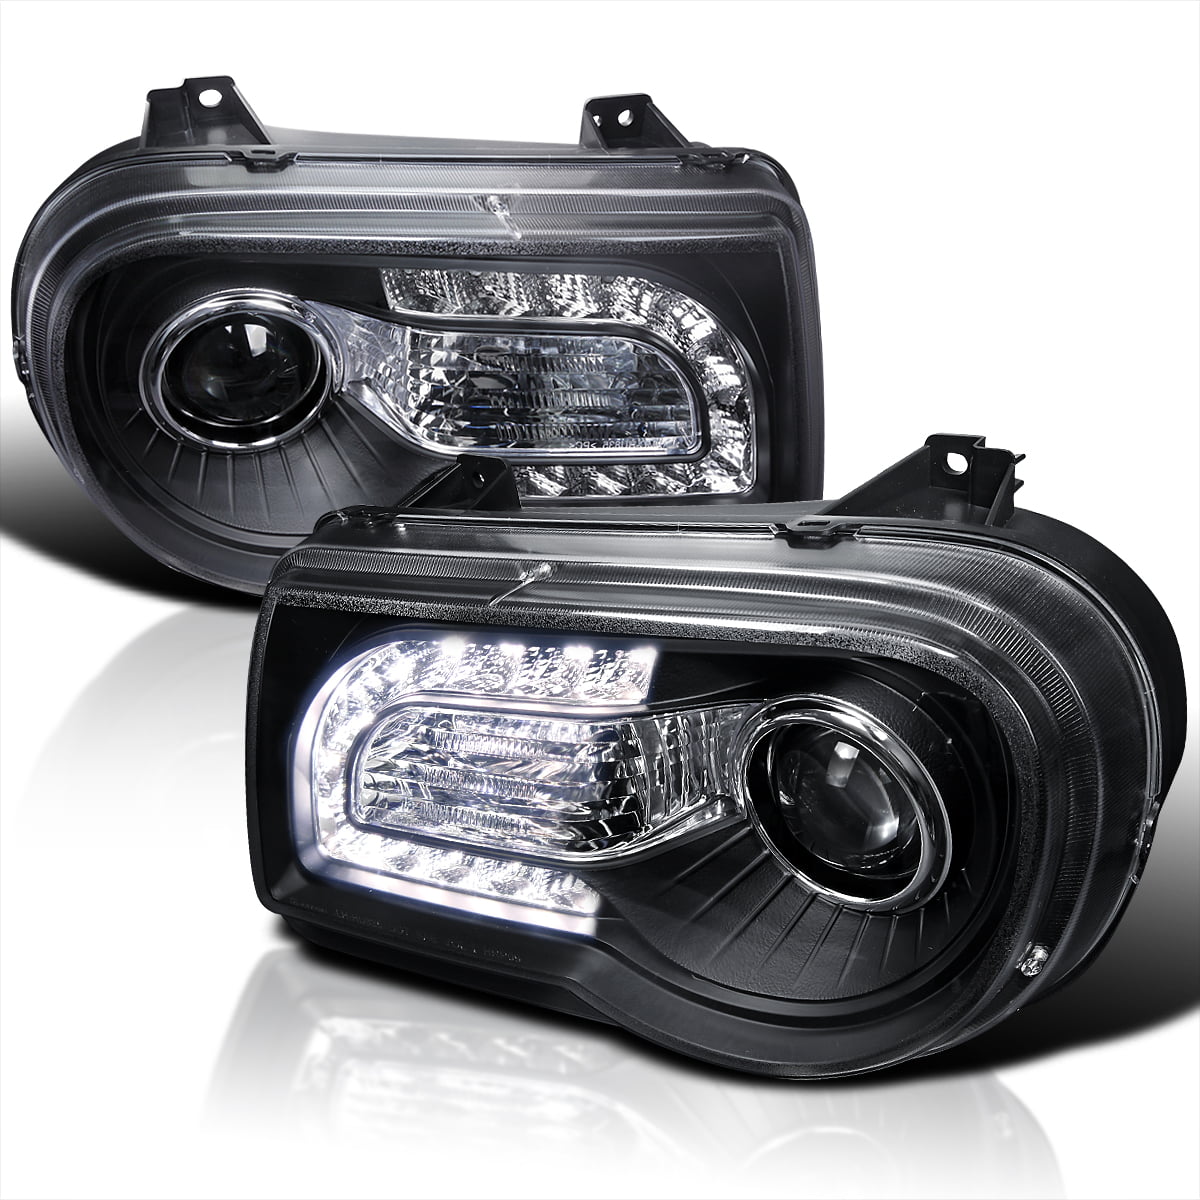 ベンチ 収納付 Spec-D Tuning Chrome Projector Headlights Head Lamp W/LED  Compatible with 2005-2010 Pontiac G6 L+R Pair Head Light Lamp Assembly  並行輸入品